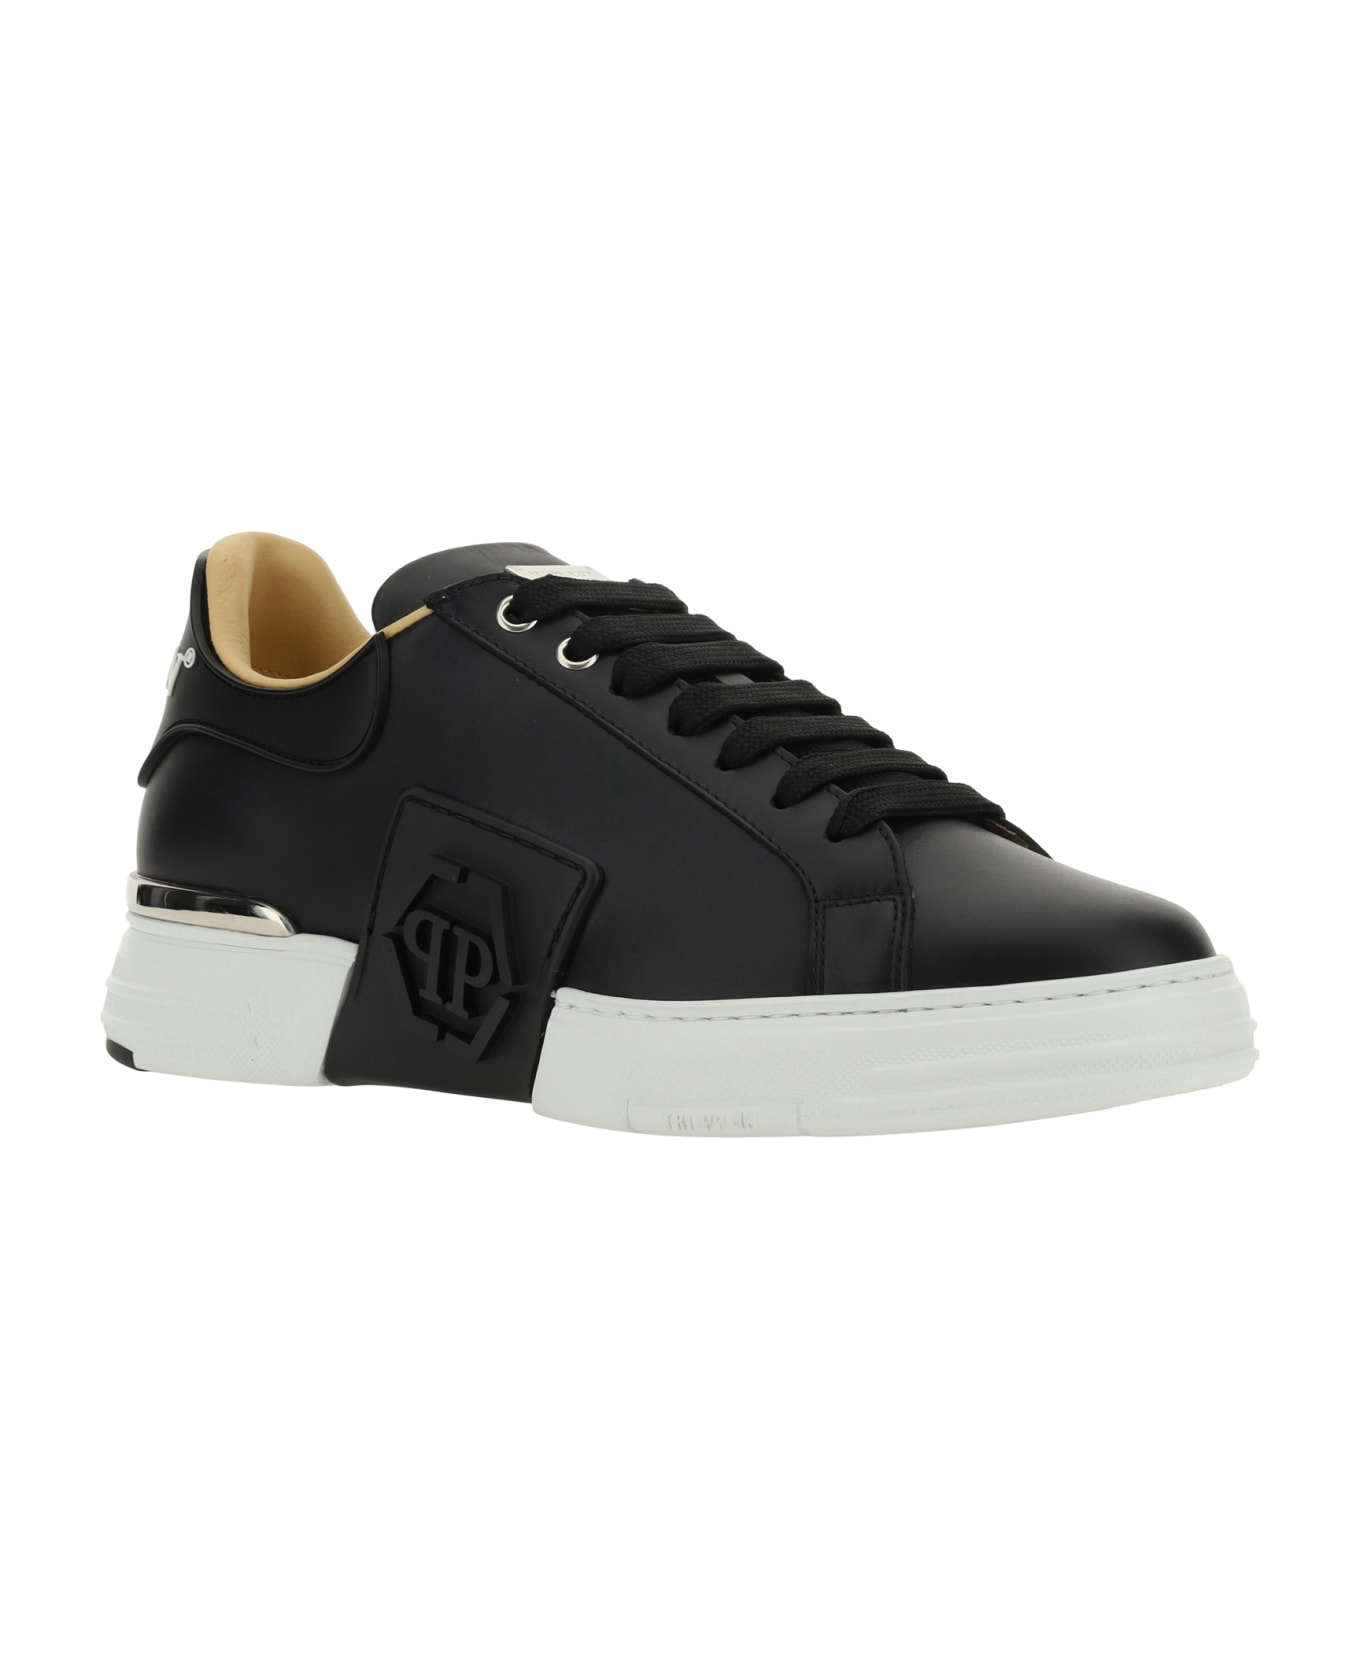 Philipp Plein Hexagon Sneakers - Black/white